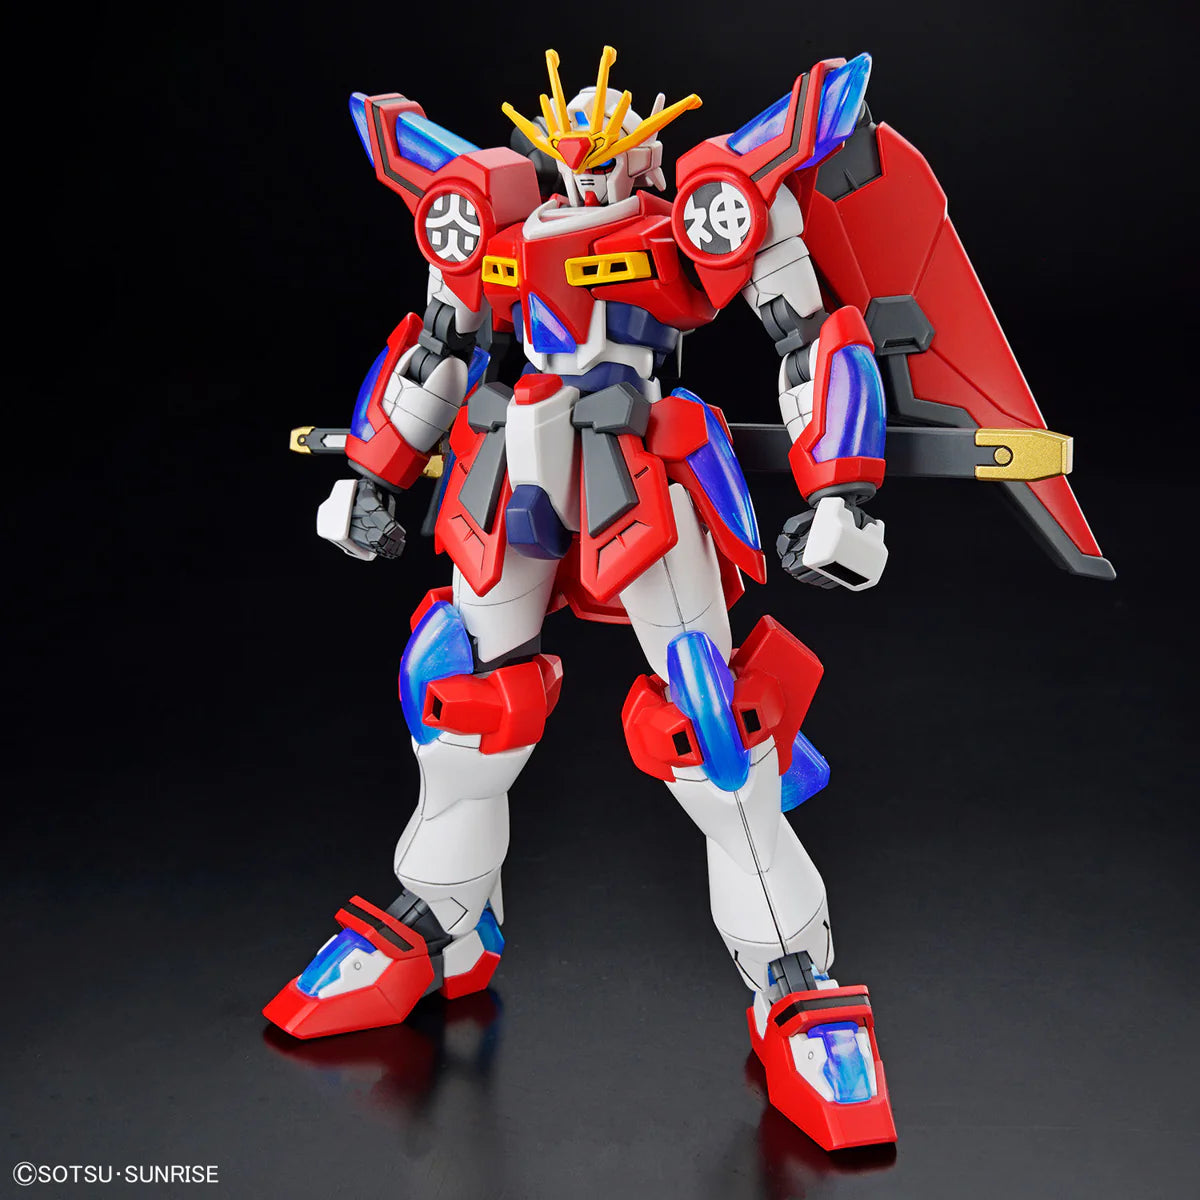 Gundam 1/144 HGBM #04 SBG-E01 Shin Burning Gundam Model Kit